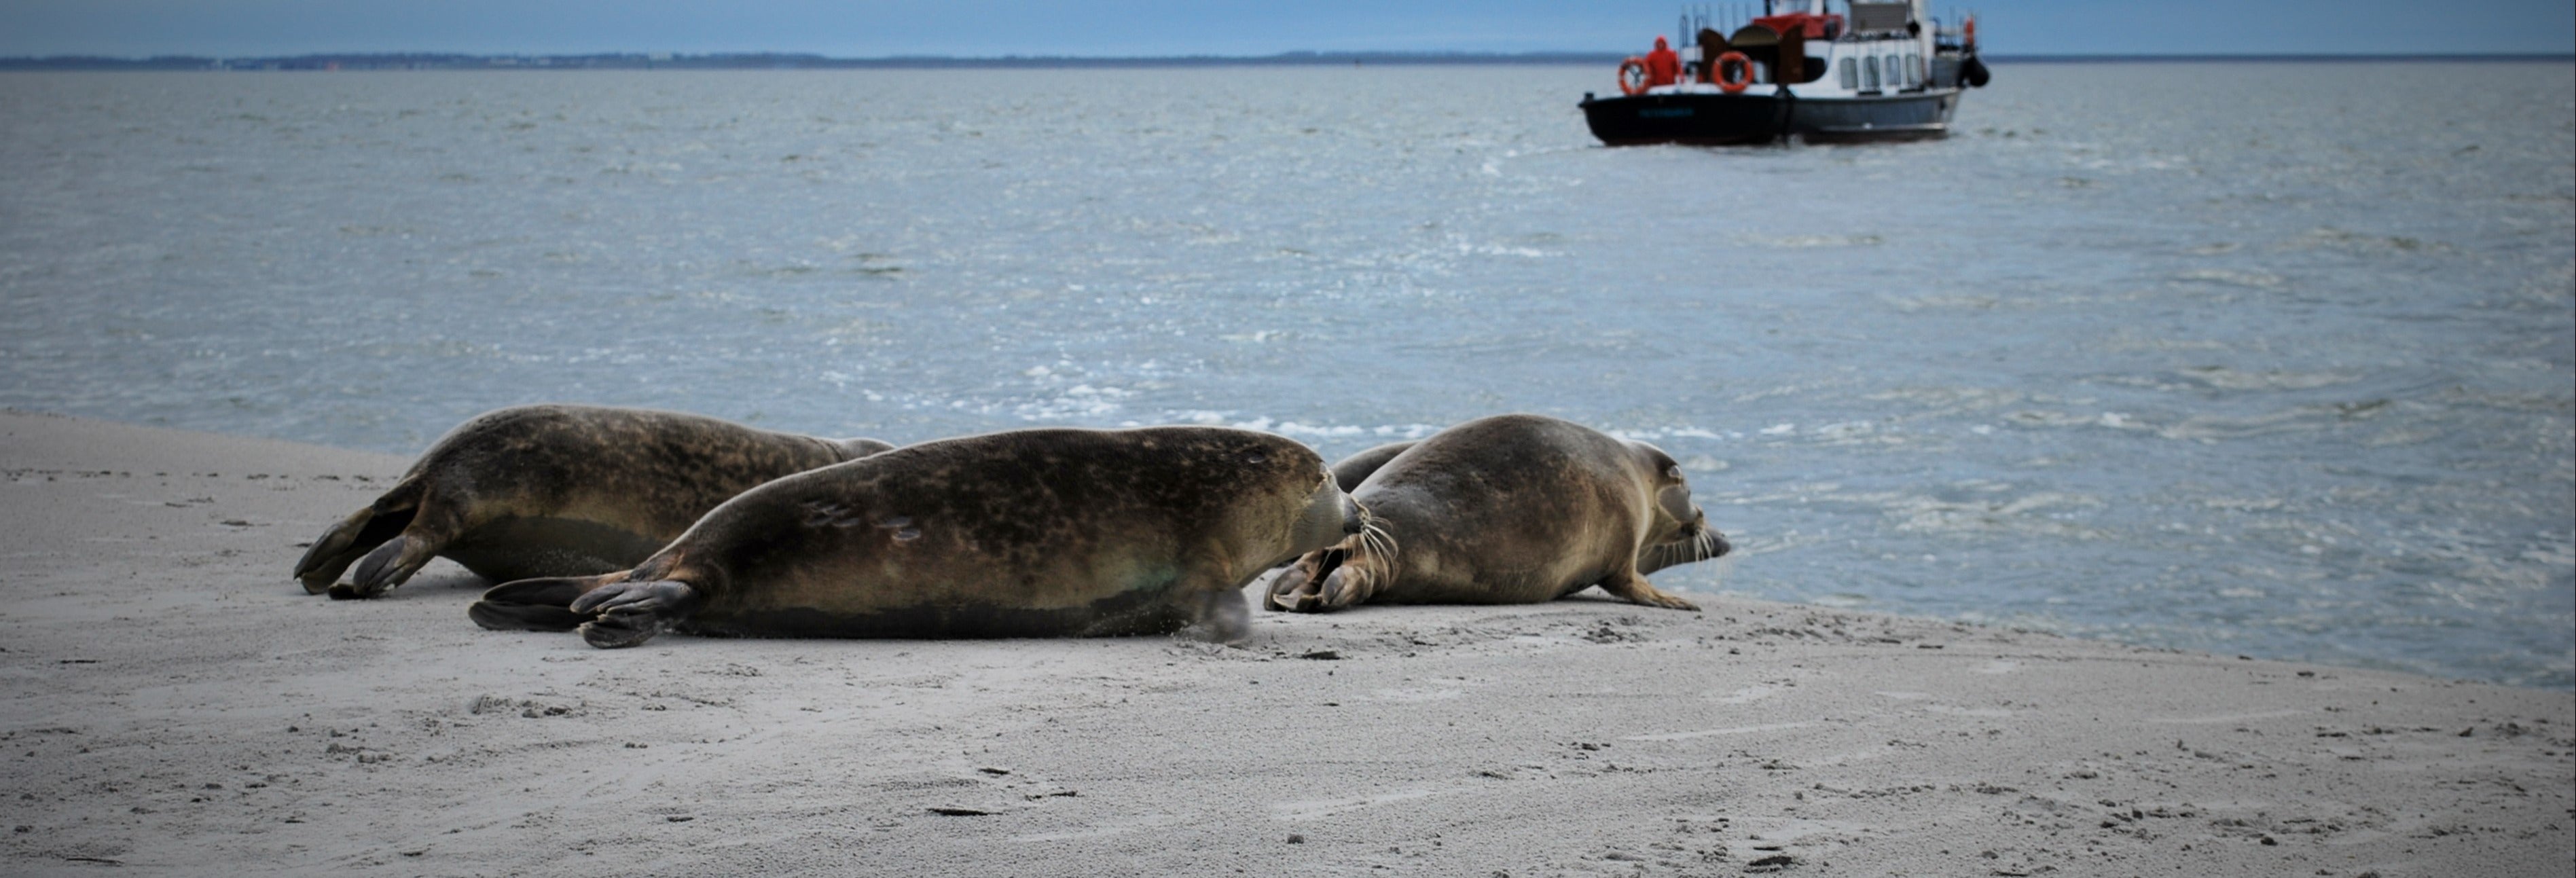 Crucero por el mar de Frisia con avistamiento de focas